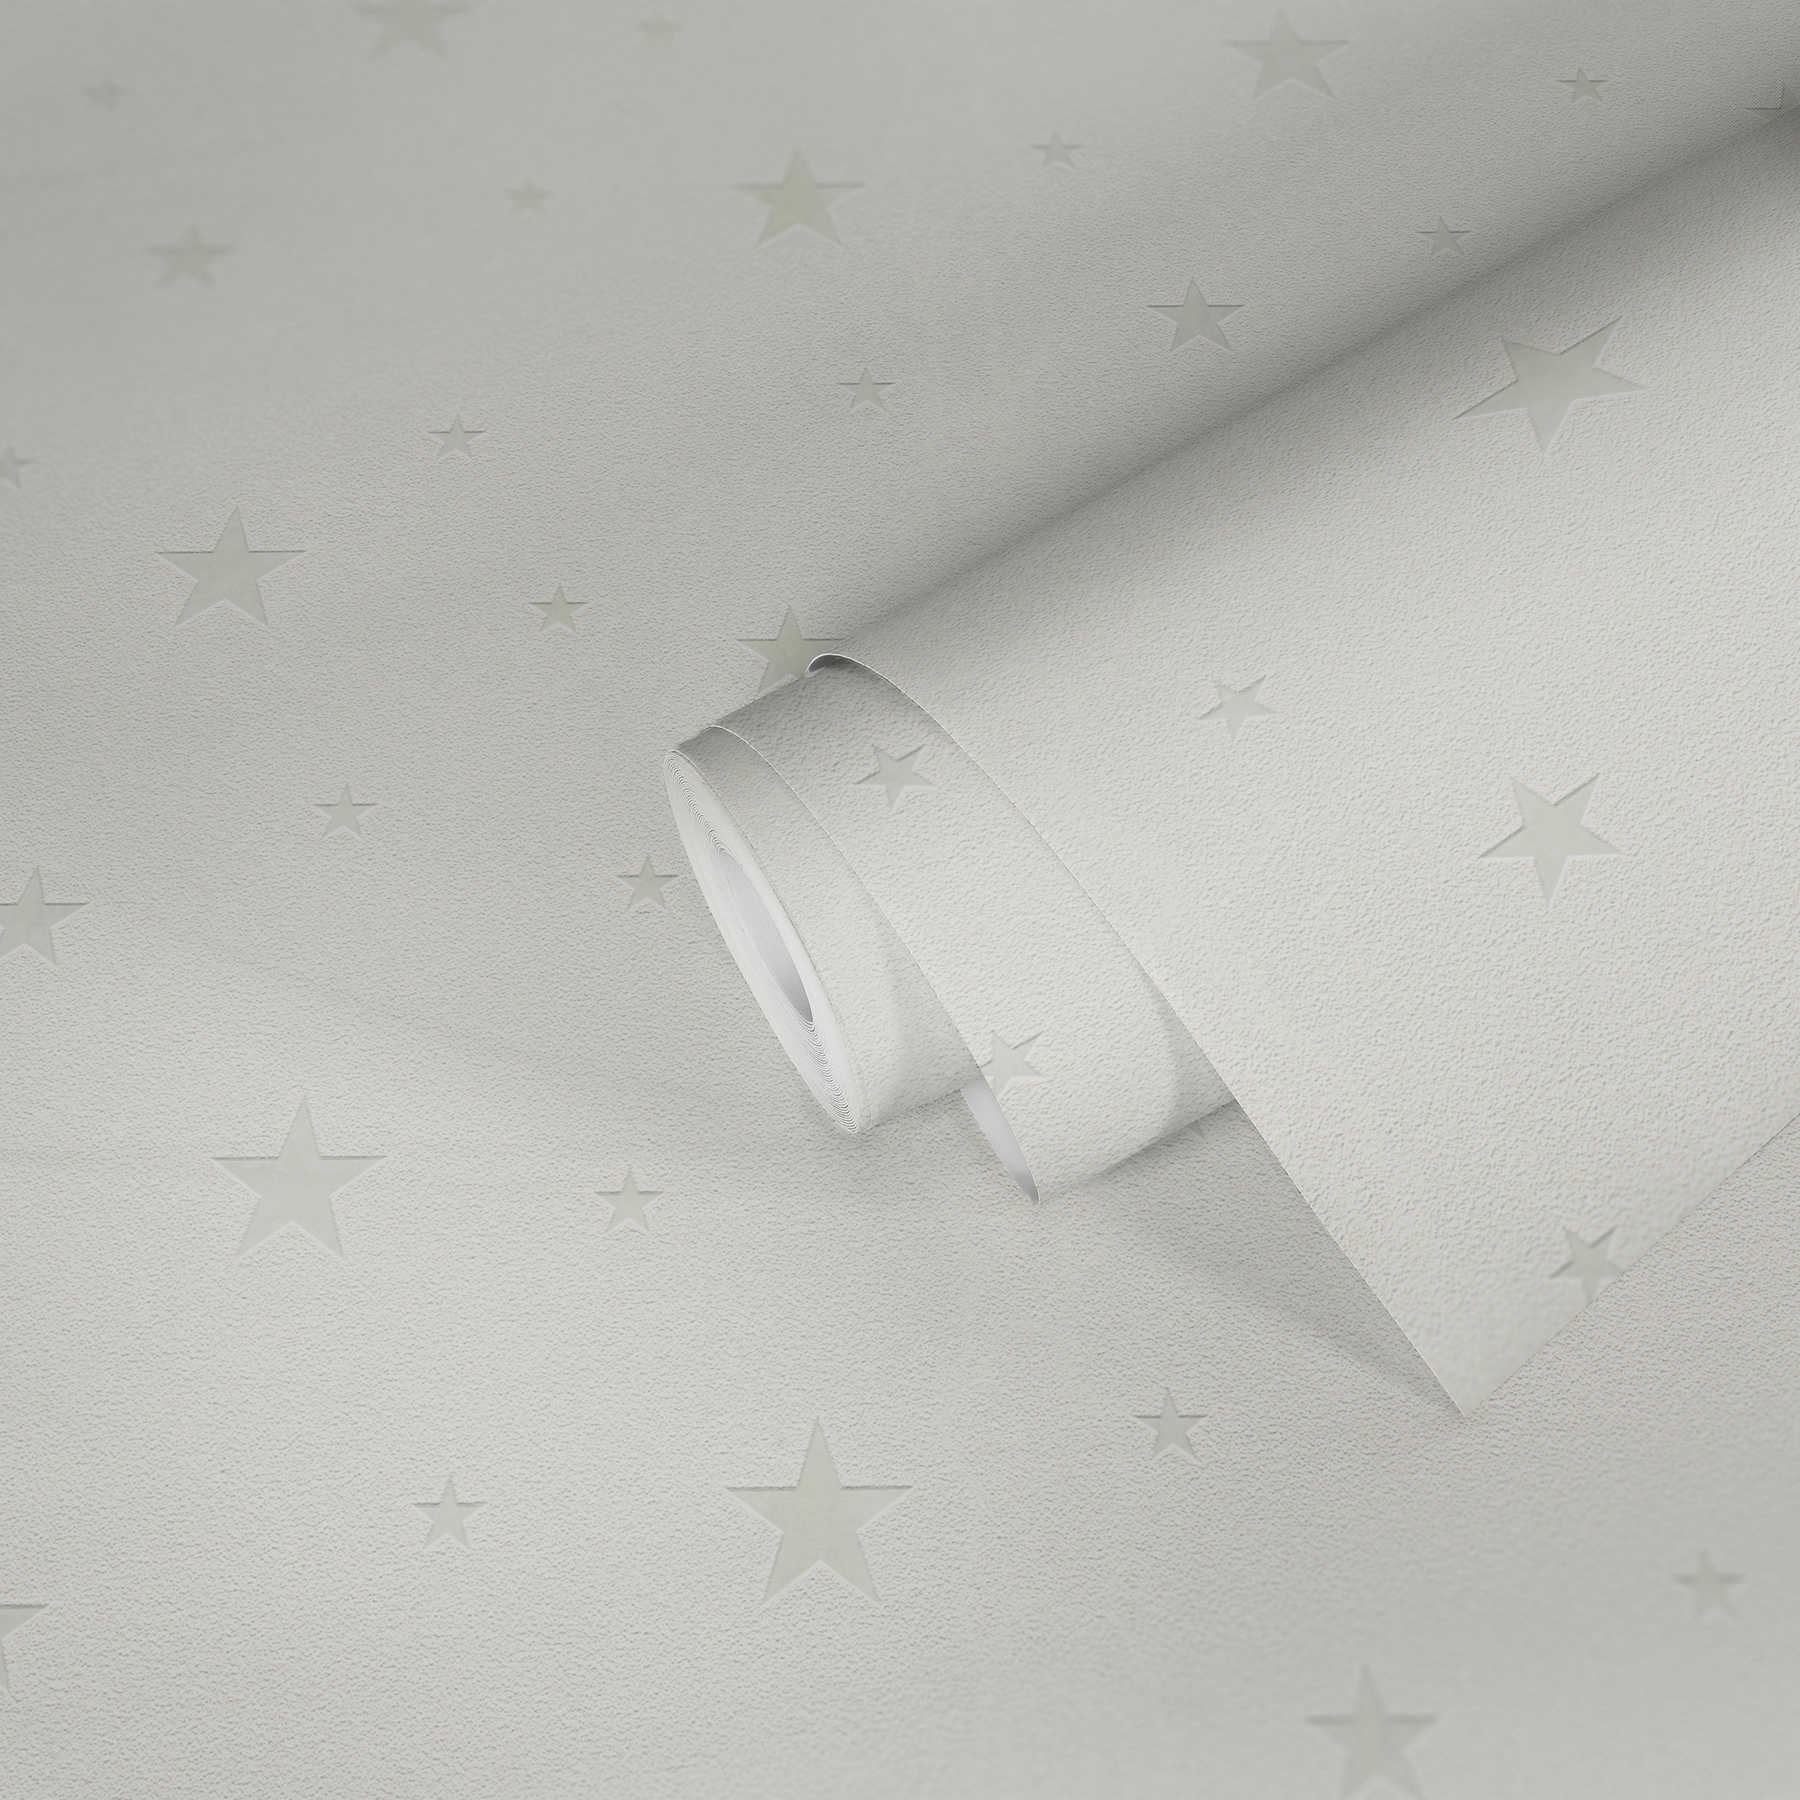             Papier peint lumineux pour chambre d'enfant avec étoiles phosphorescentes - Blanc
        